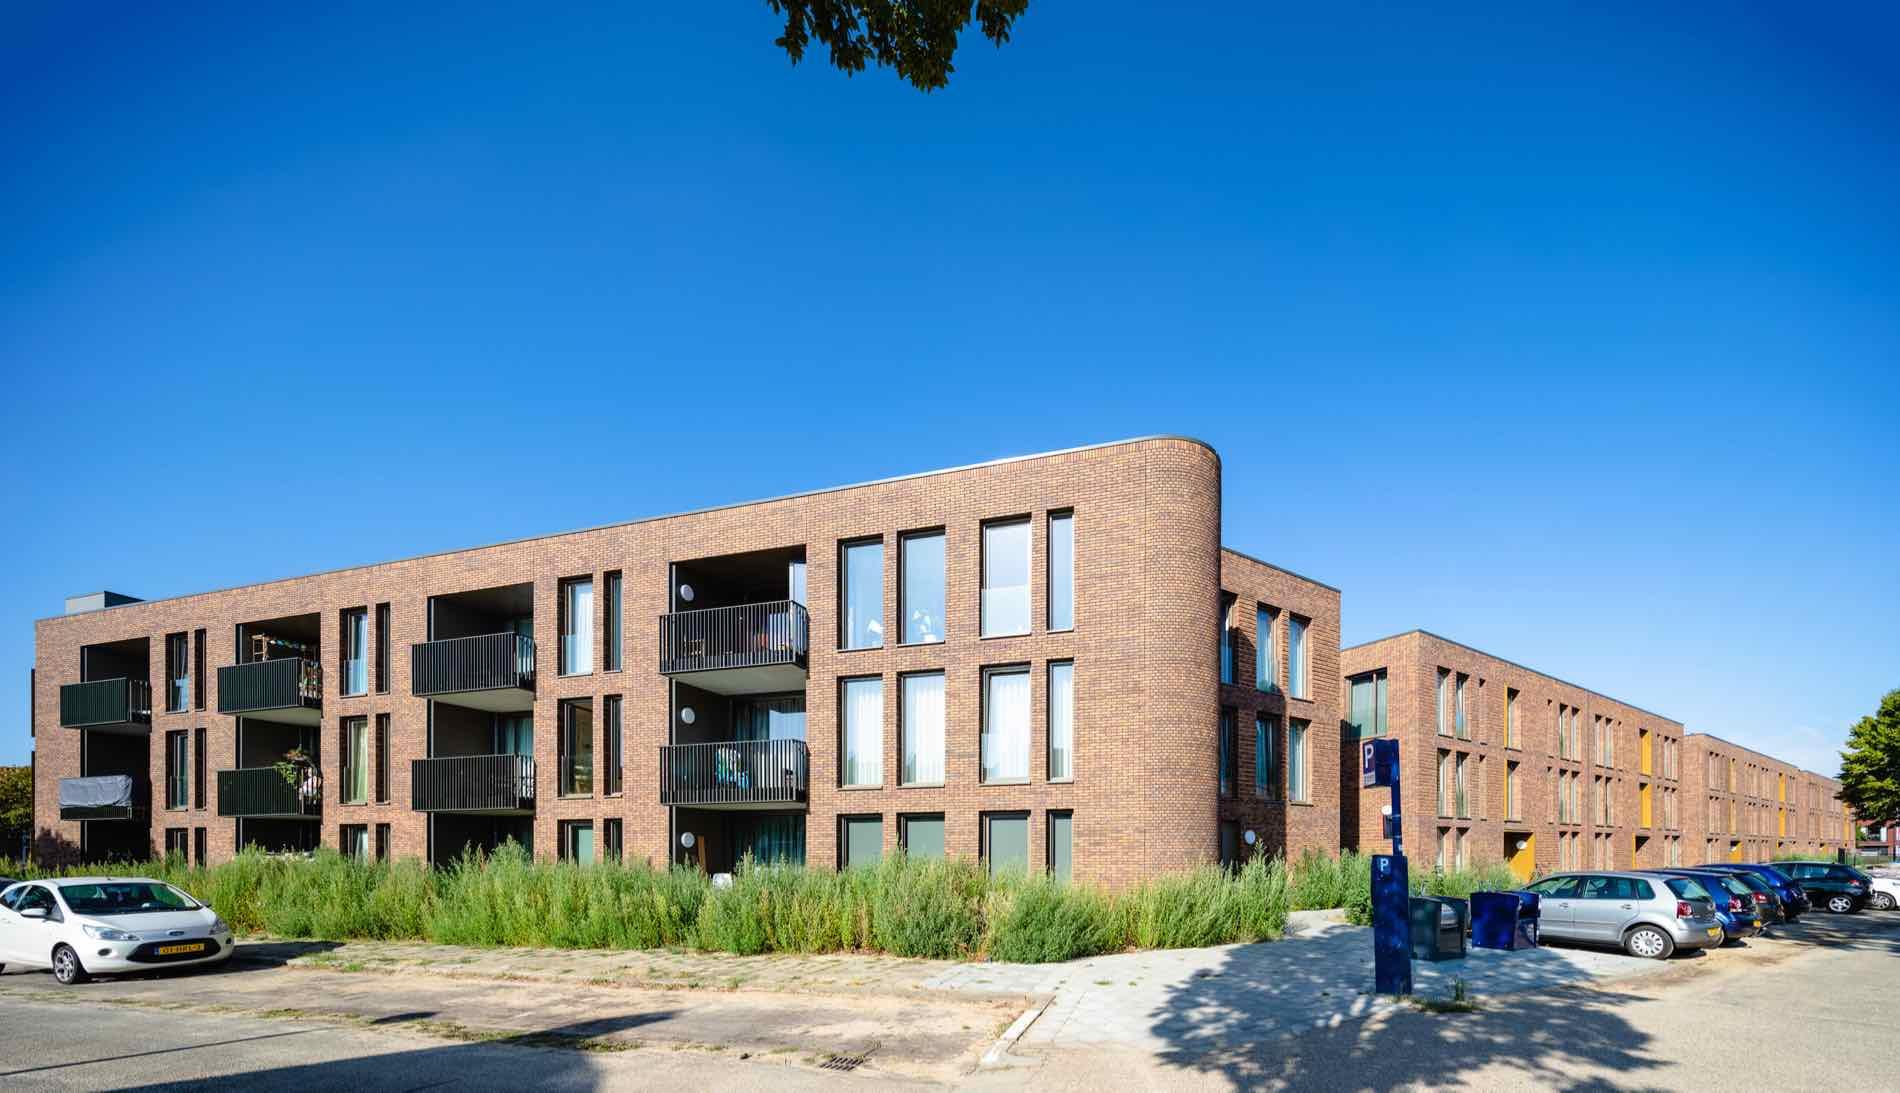 Appartementen Oeterselaan 1, Den Bosch - Compen Architecten